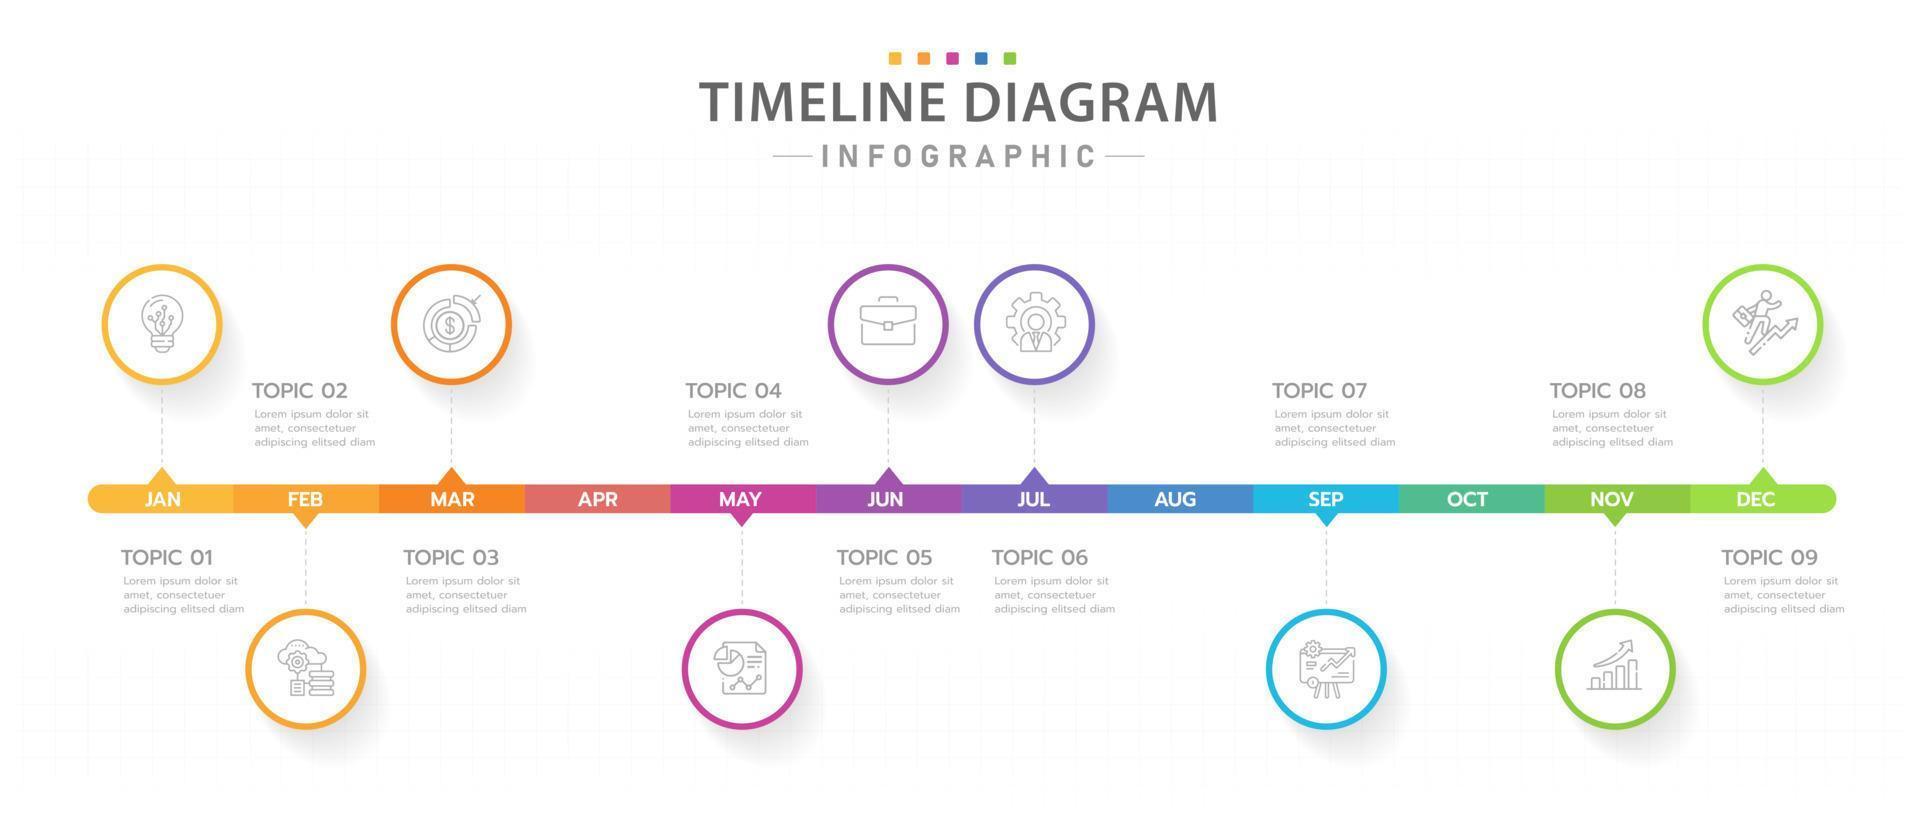 modèle d'infographie pour les entreprises. Calendrier de diagramme de chronologie moderne de 12 mois avec cercles, infographie vectorielle de présentation. vecteur